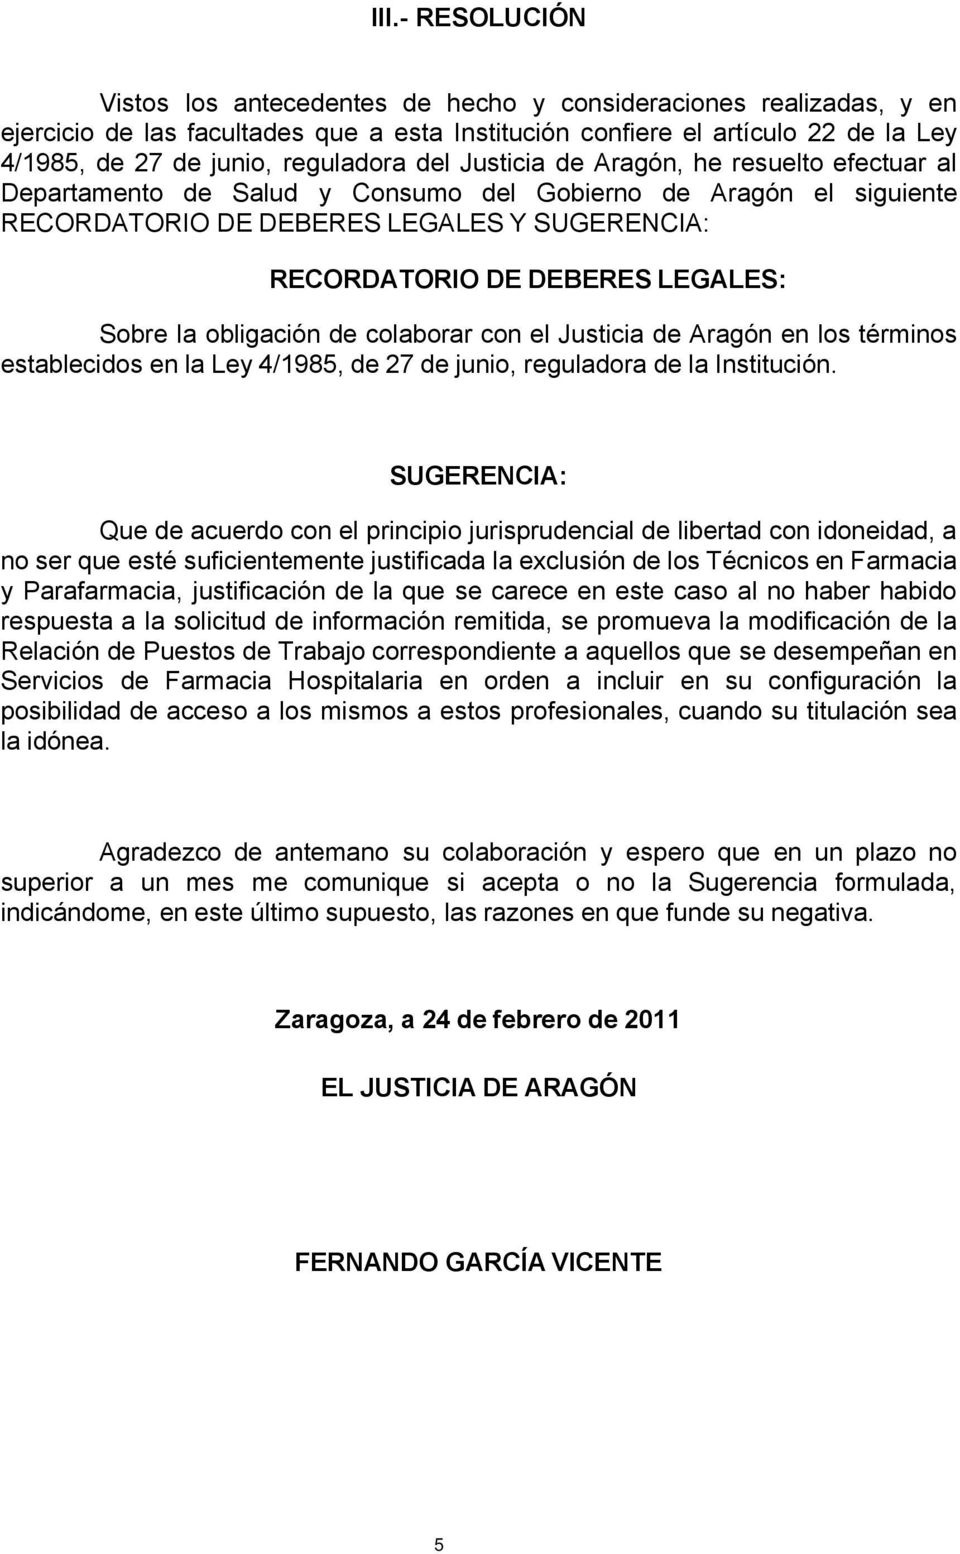 LEGALES: Sobre la obligación de colaborar con el Justicia de Aragón en los términos establecidos en la Ley 4/1985, de 27 de junio, reguladora de la Institución.